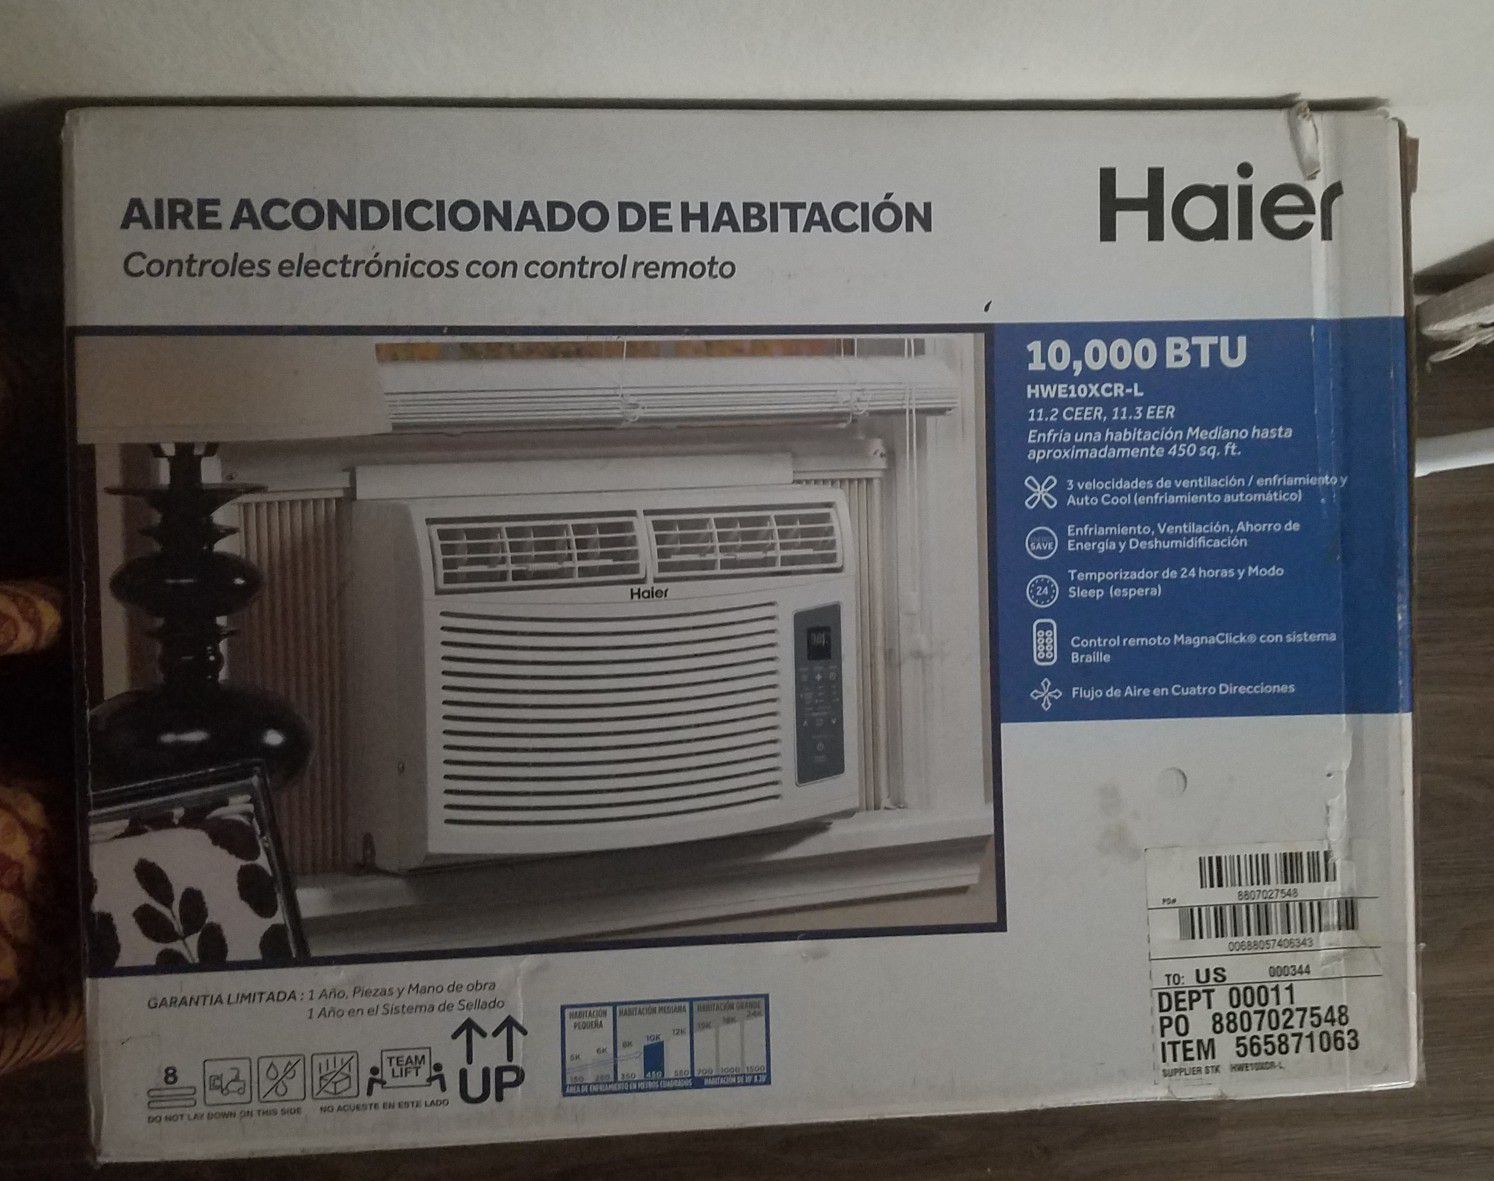 Haier 10,000 BTU room air conditioner . Aire acondicionado de habitación